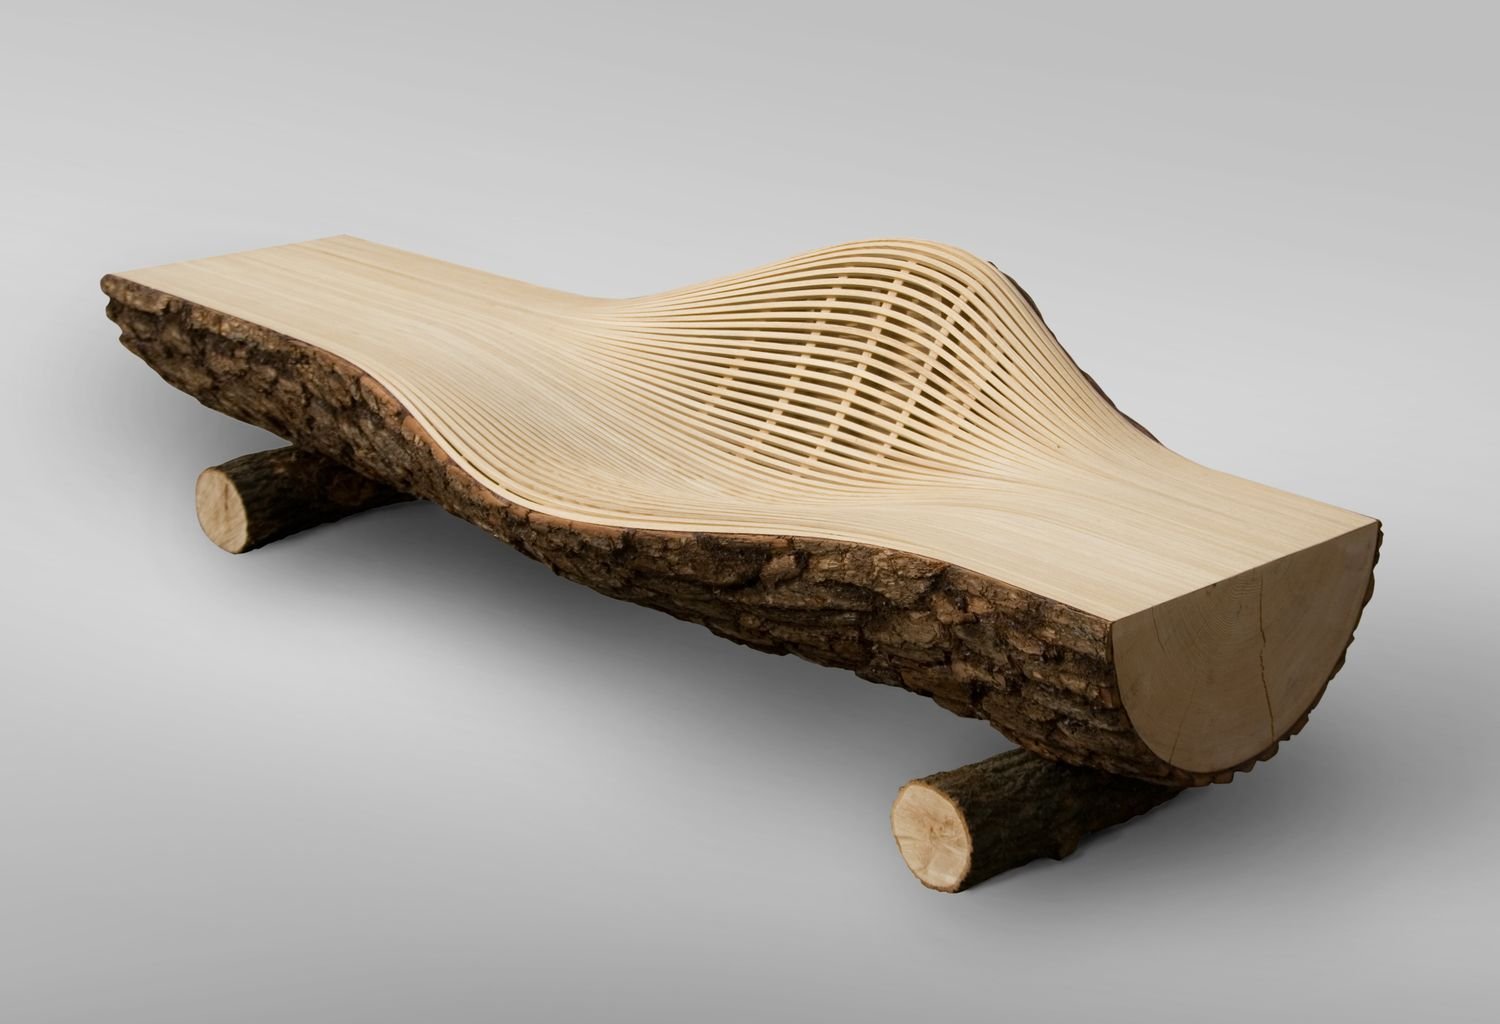 More wooden most wooden. Деревянные изделия. Интересные изделия из дерева. Дизайнерские деревянные изделия. Необычная мебель из дерева.